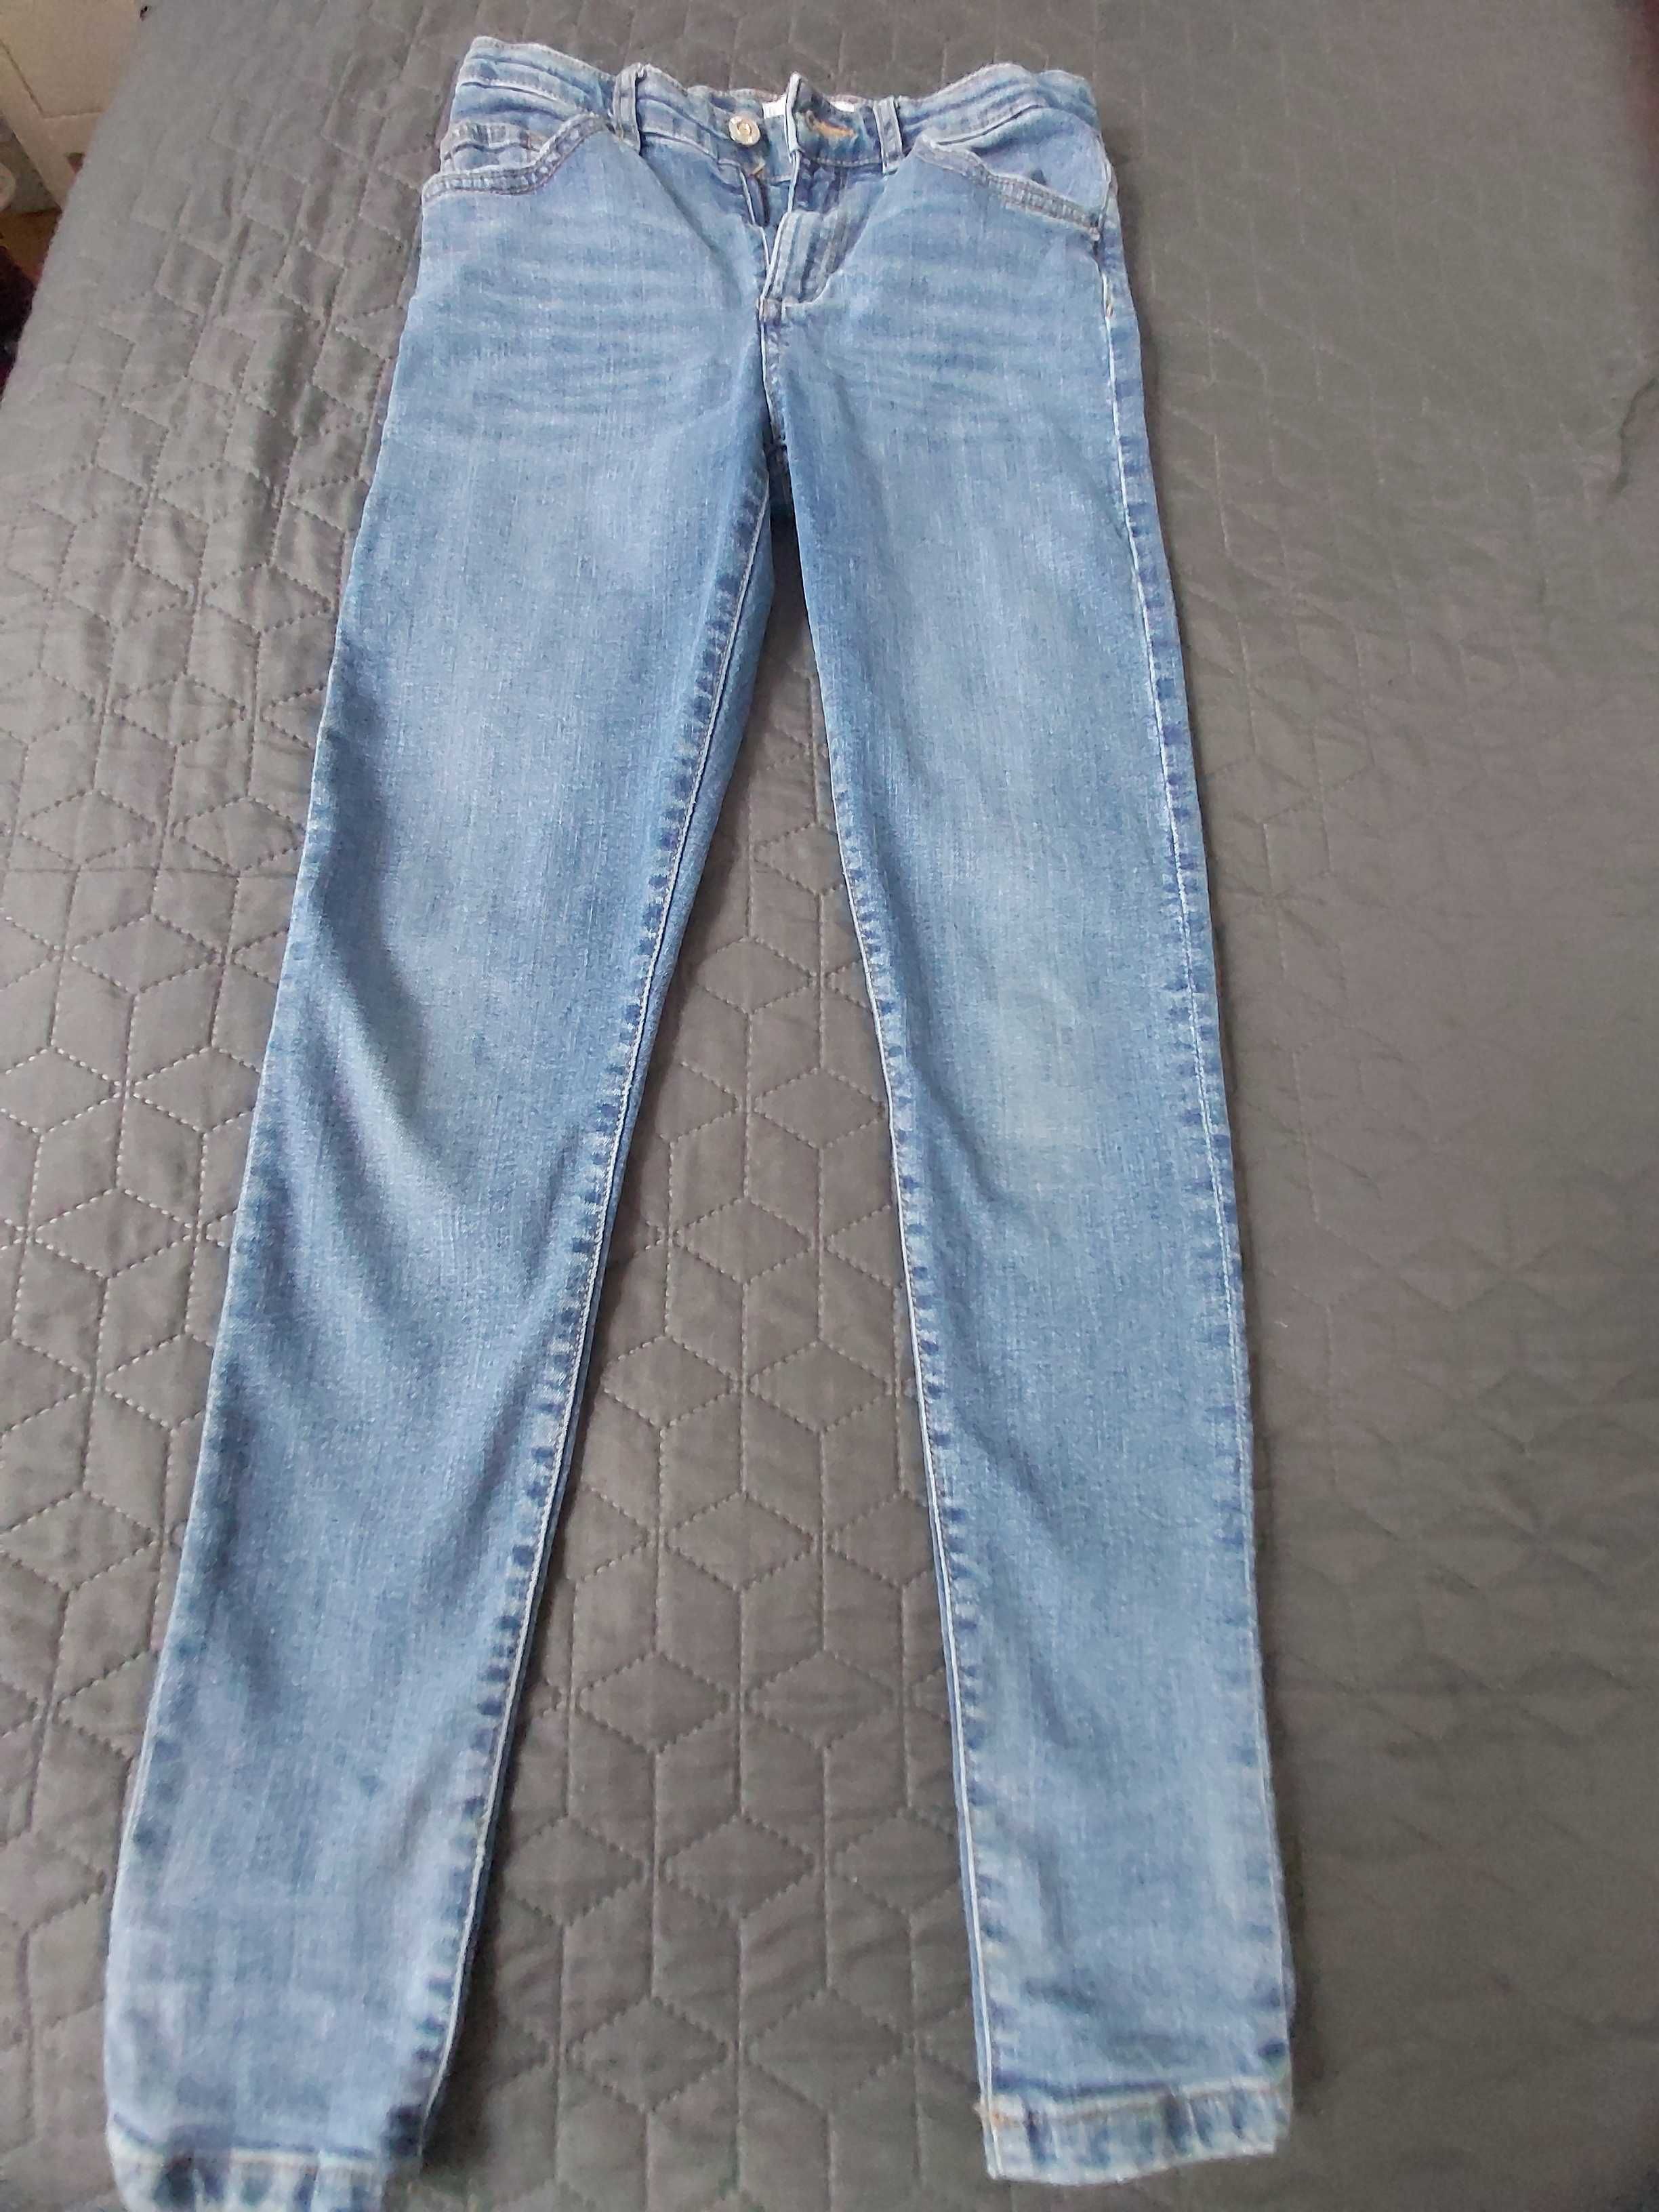 Spodnie jeans dziewczęce 152cm